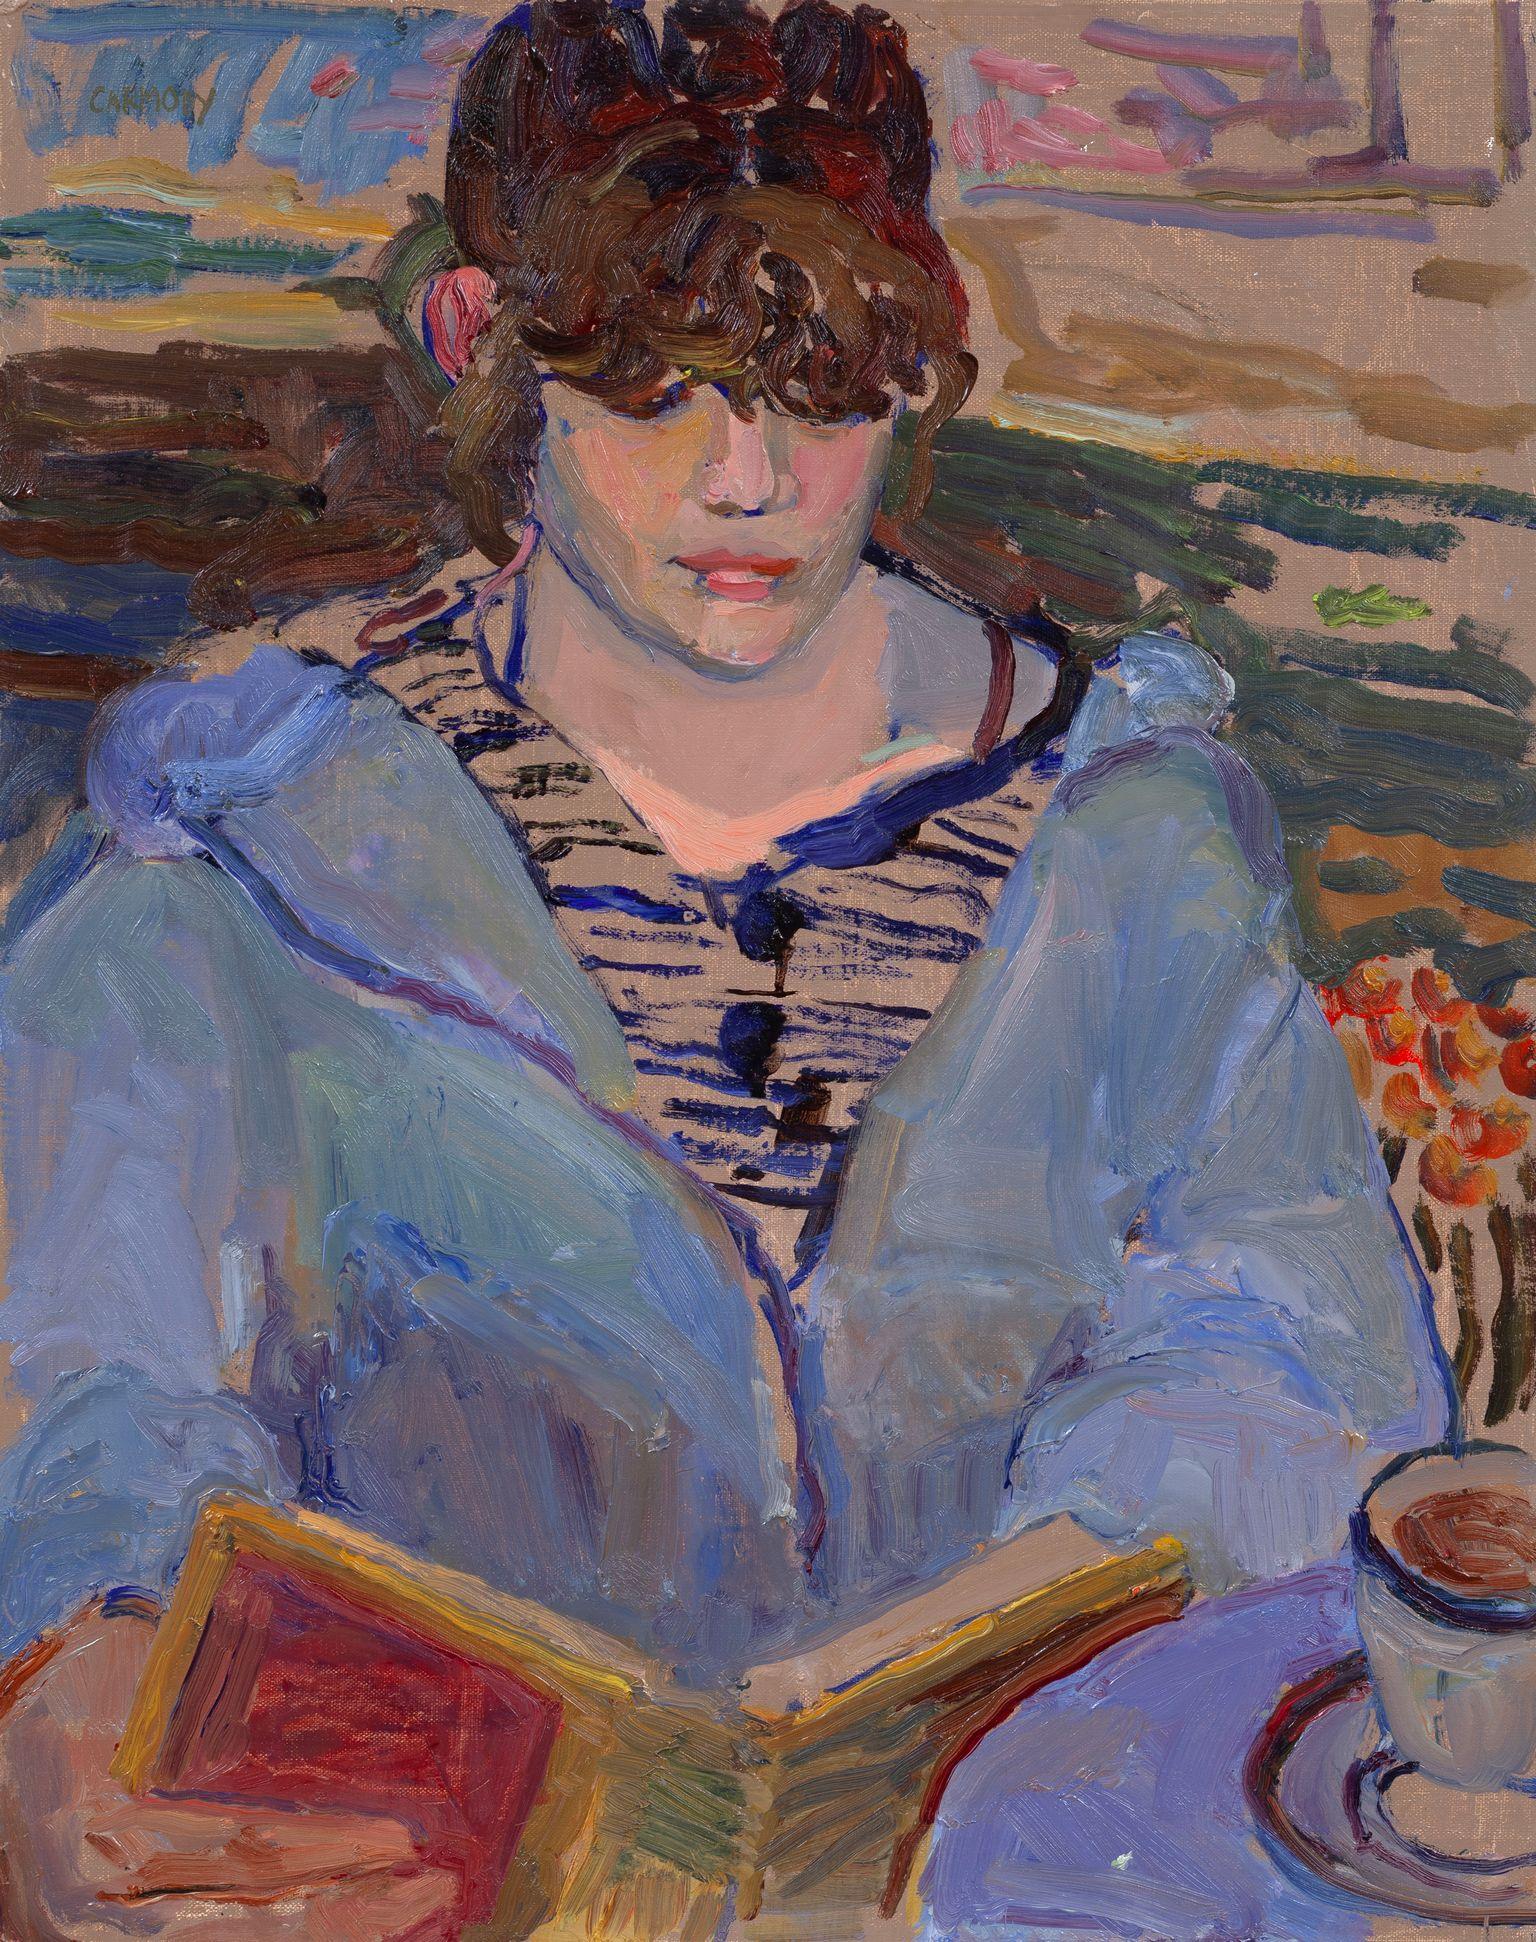 Kelly Carmody Portrait Painting – "Lesen" zeitgenössisches Ölgemälde einer Frau mit Buch, malerisch stilisiert